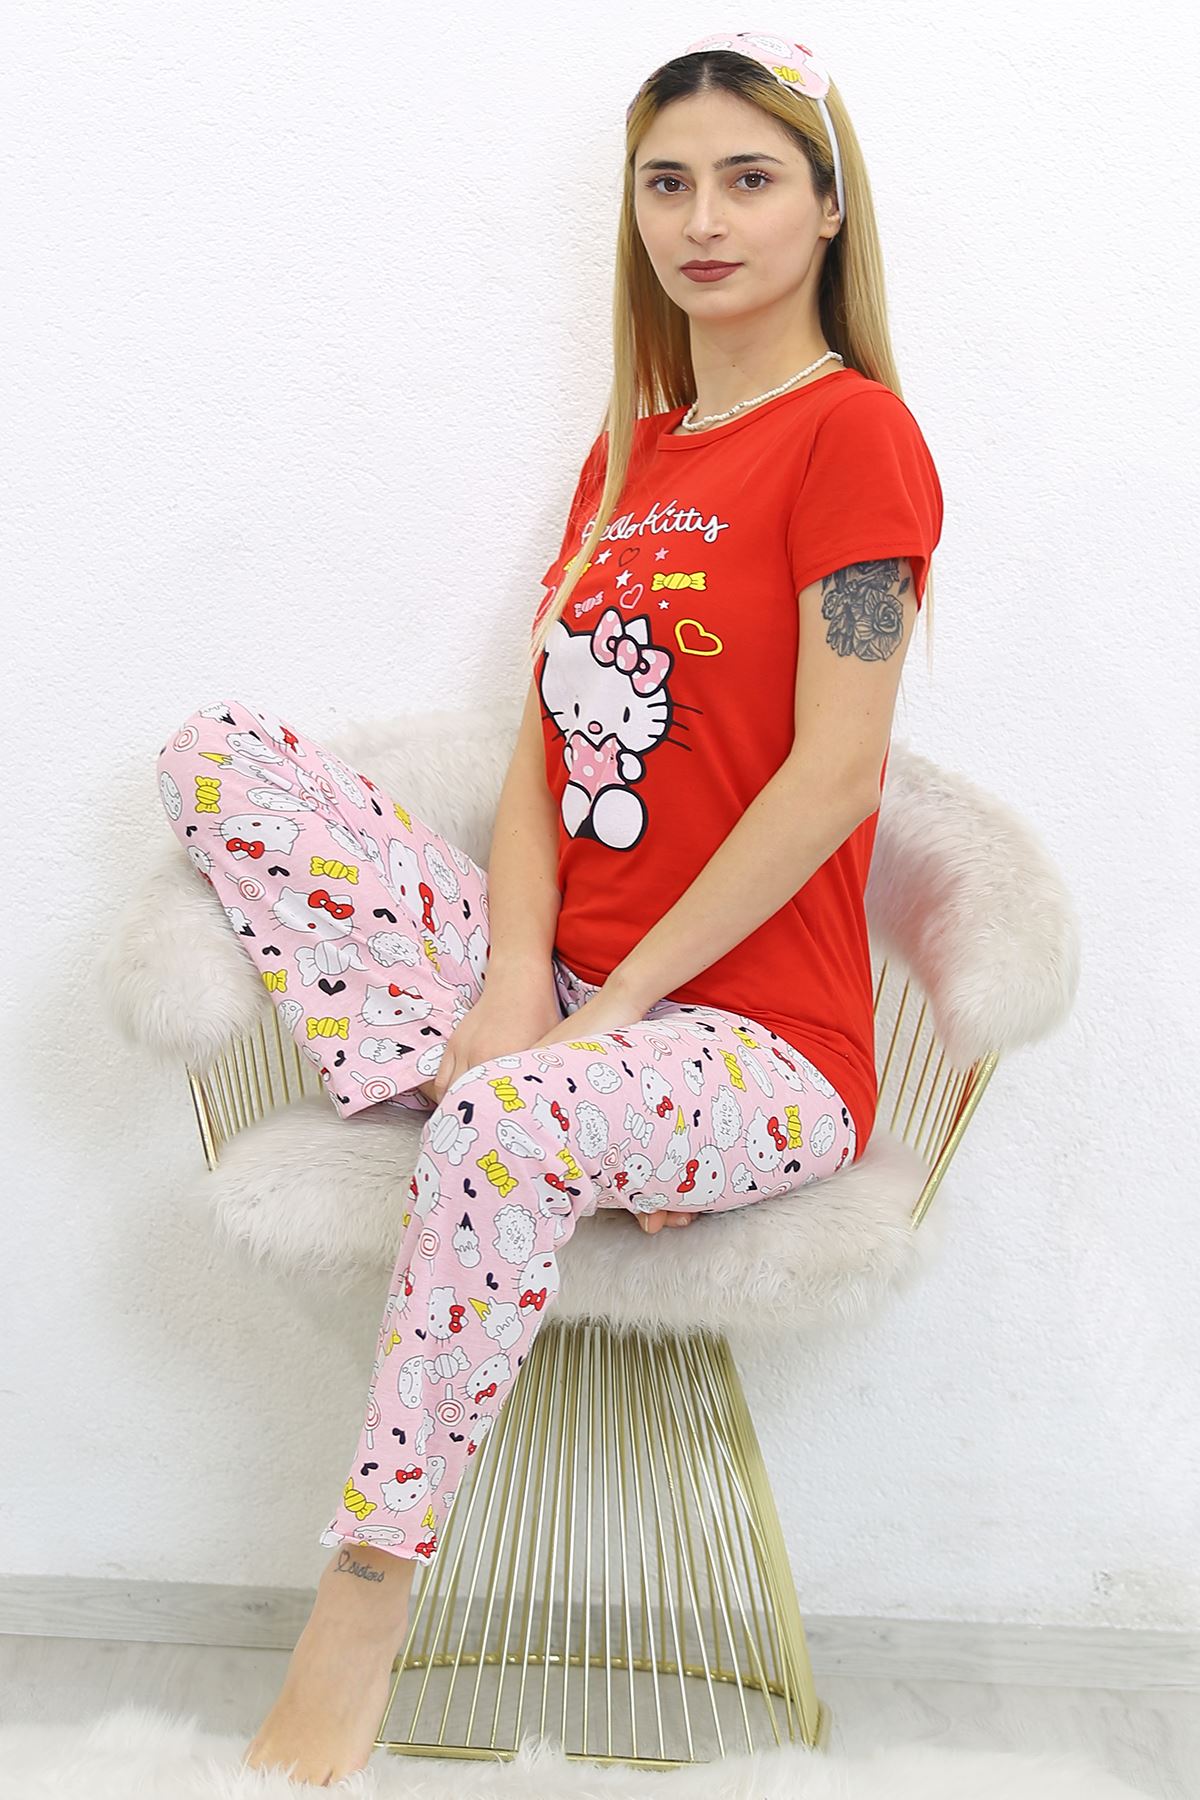 Baskılı Pijama Takımı Kırmızı - 8567.102.